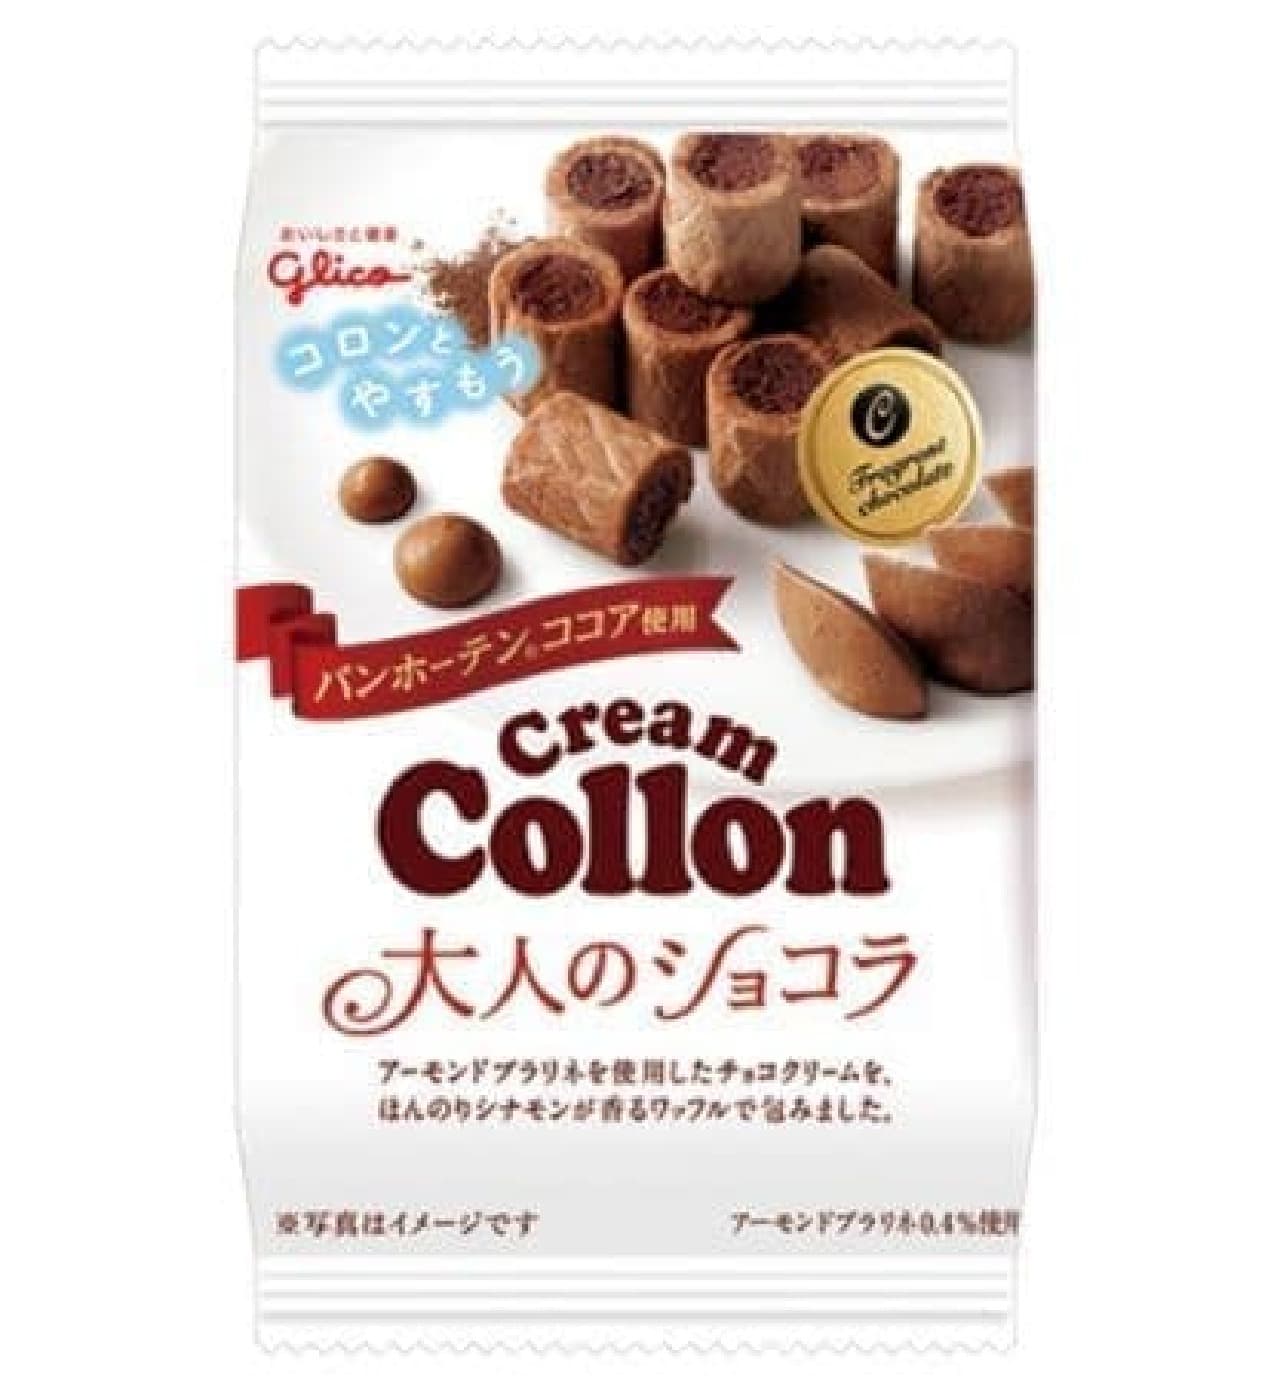 Glico cream colon bag Adult chocolate